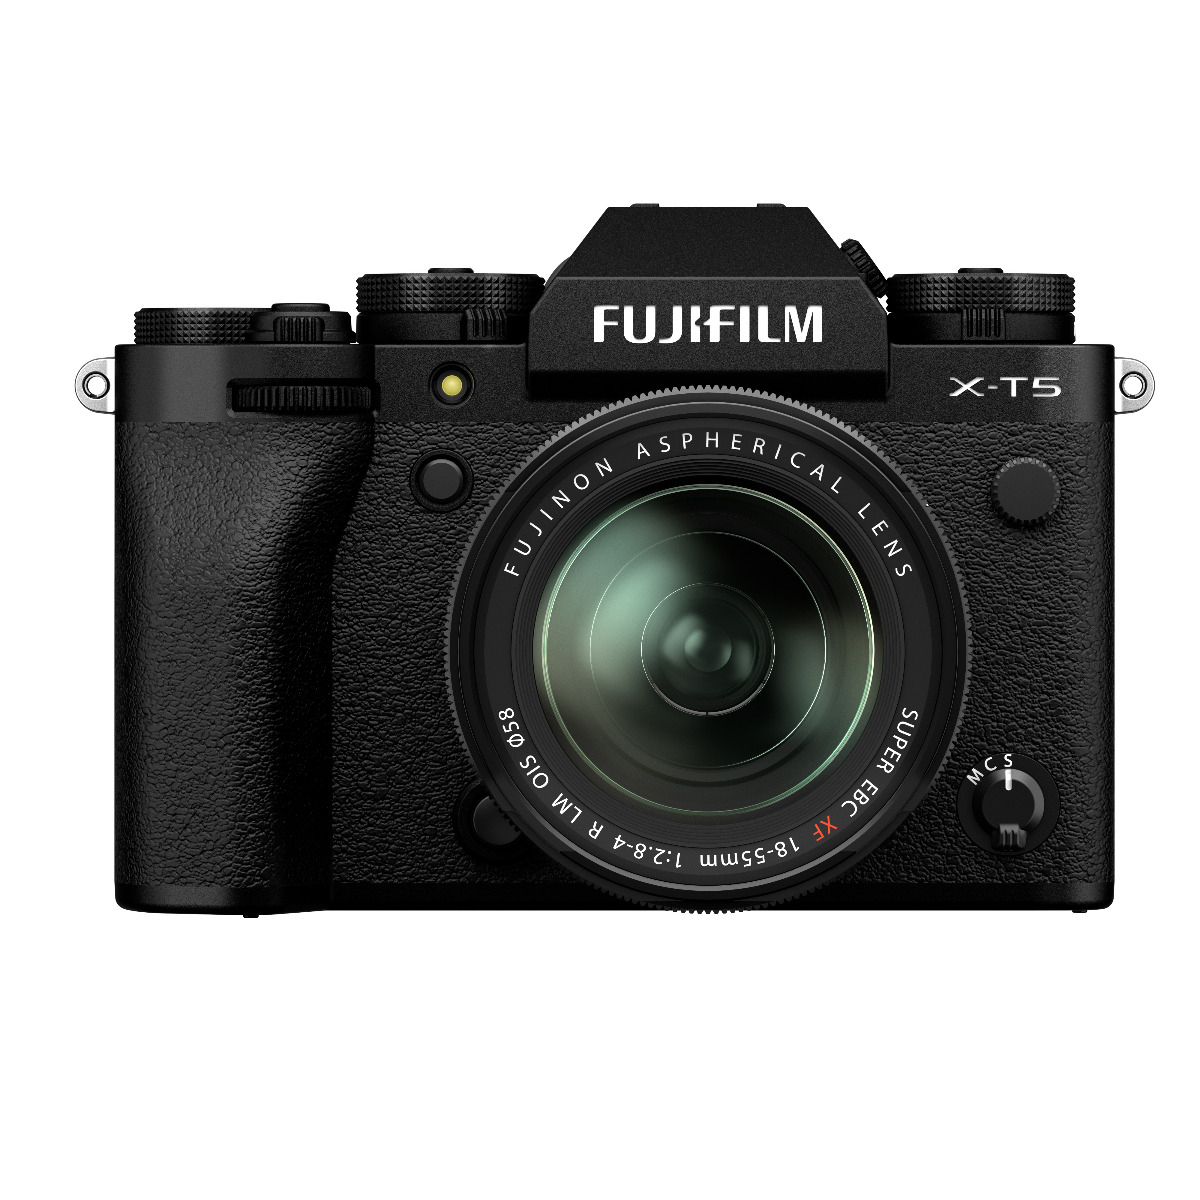 Dodd Camera - Fujifilm X-T5 with XF 18-55mm F2.8-4 R LM OIS Lens